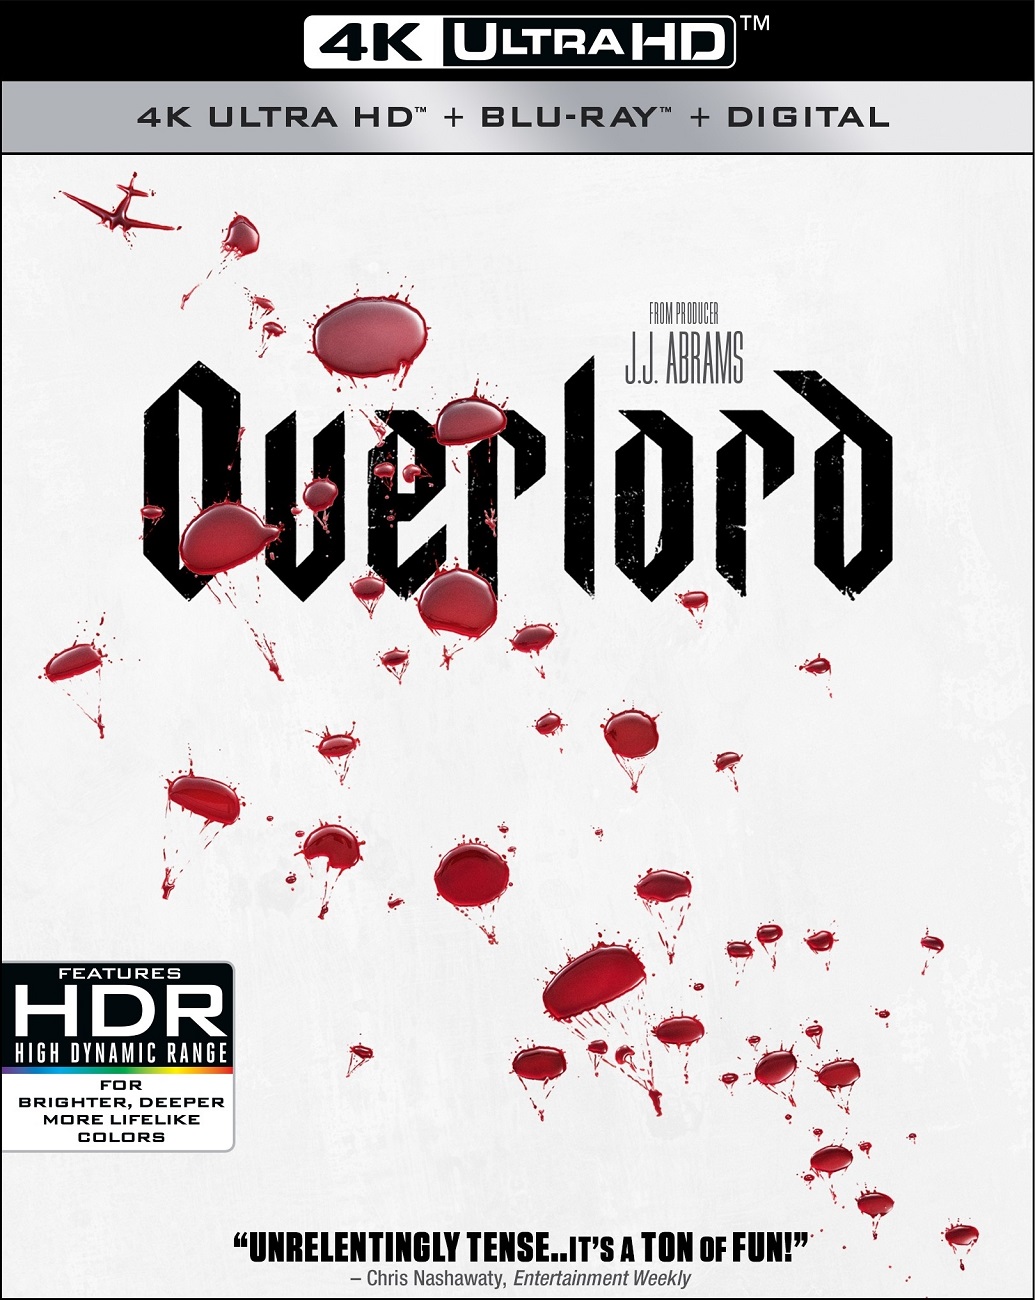 霸主/大君主之役(港)/霸王行动/君主/大君主行动【4K原盘繁中 DIY简繁/双语字幕】 Overlord 2018 2160p UHD Blu-ray HEVC TrueHD 7.1 Atmos-Thor@HDSky  [59.55 GB]